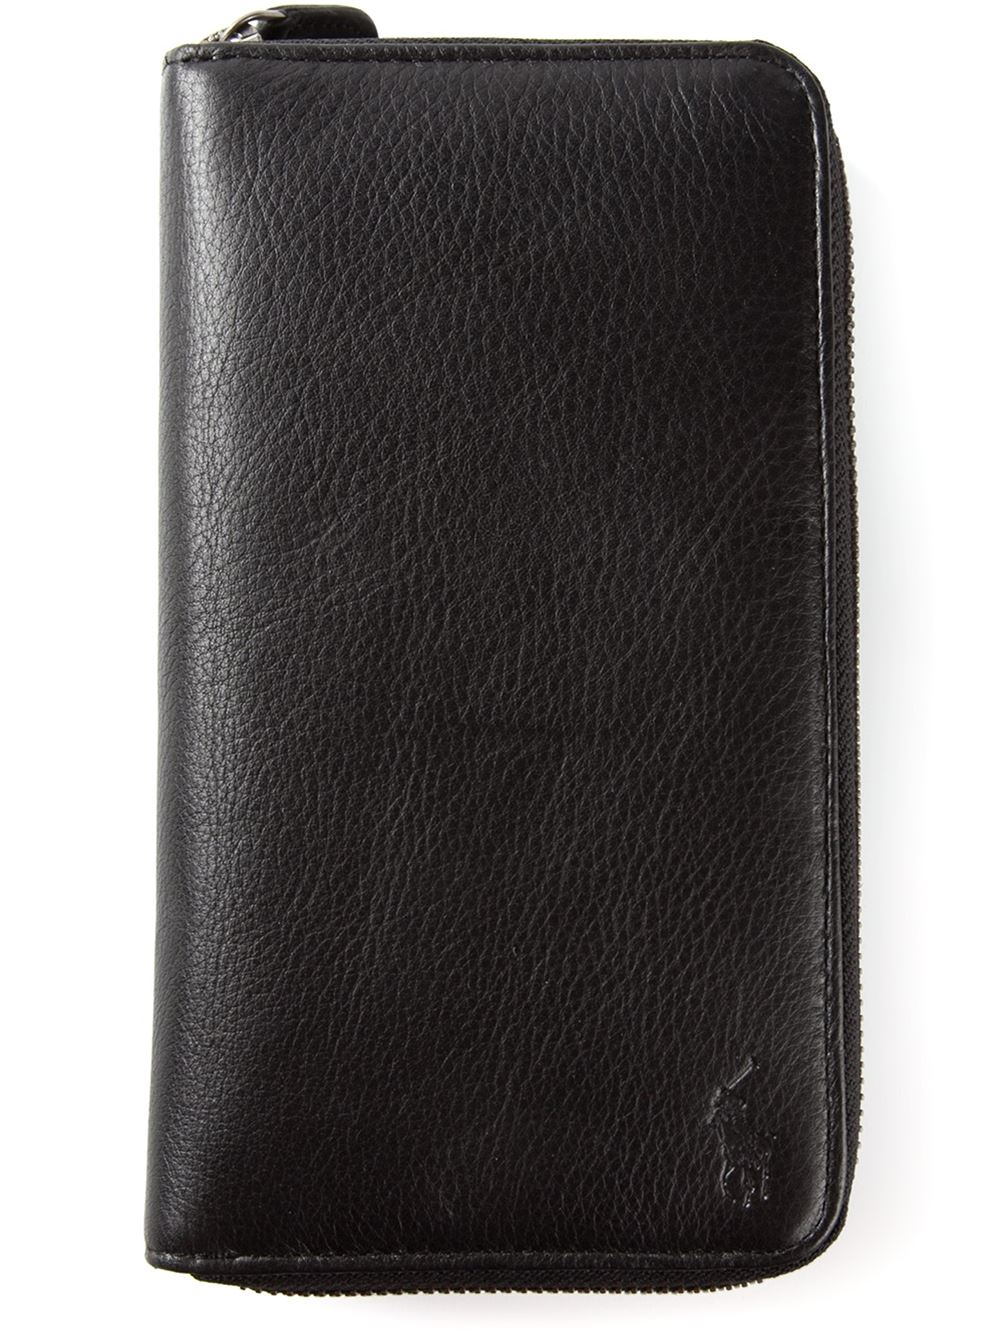 Polo Ralph Lauren Long Zip Around Wallet in Black for Men - Lyst